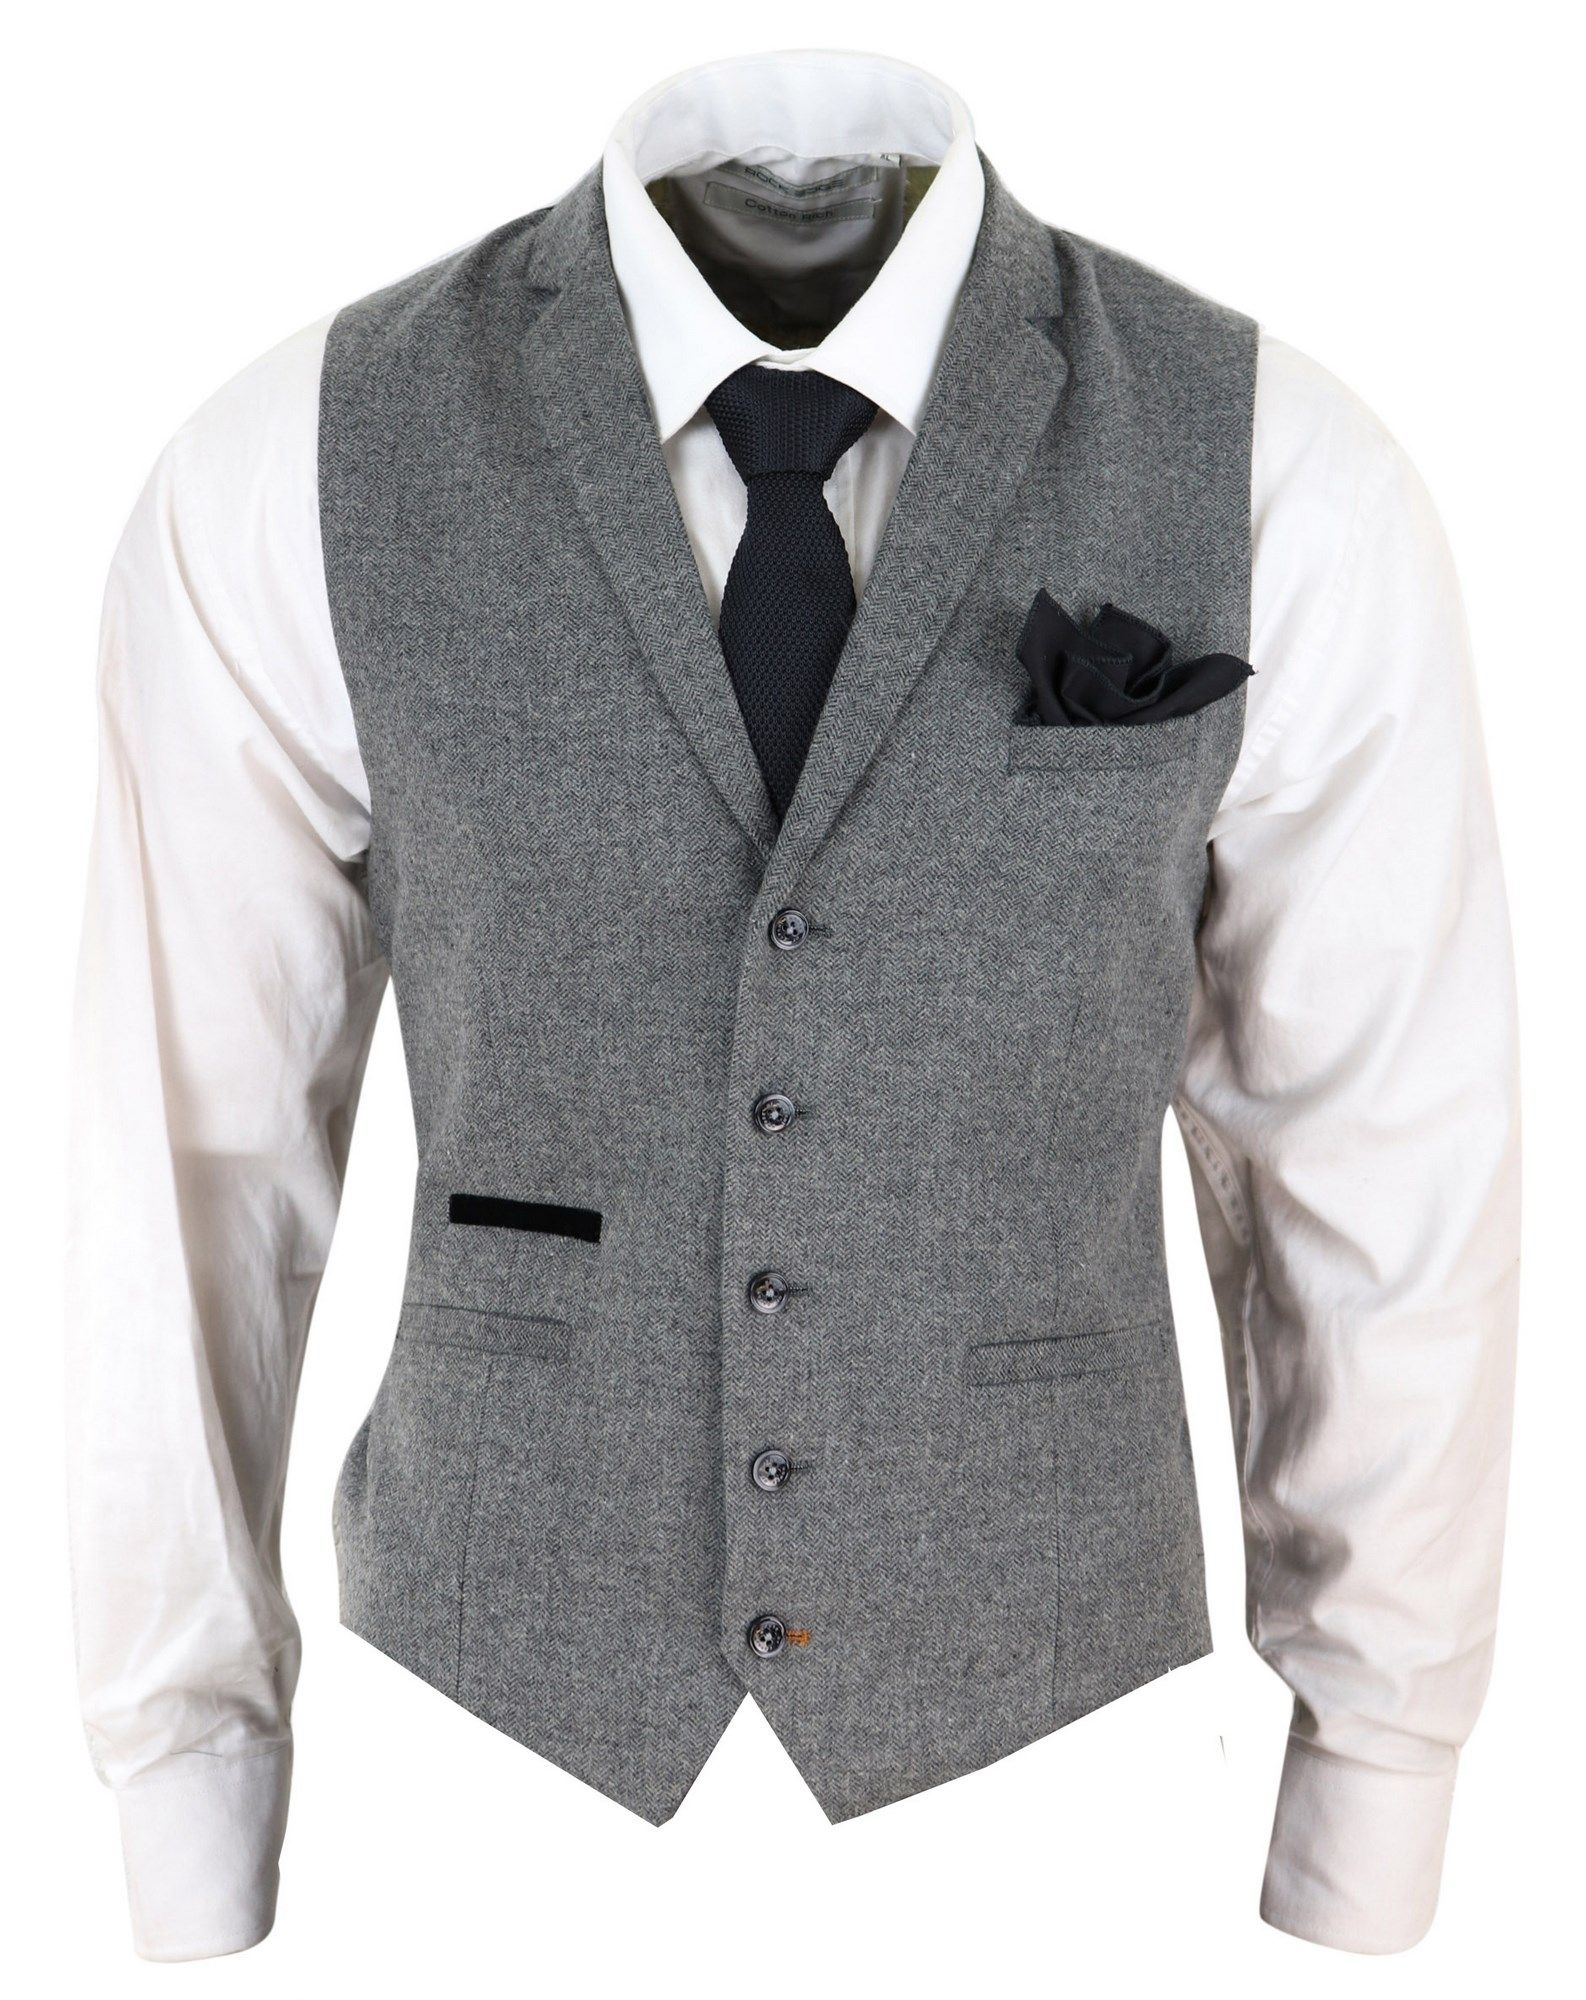 grey tweed blazer and waistcoat